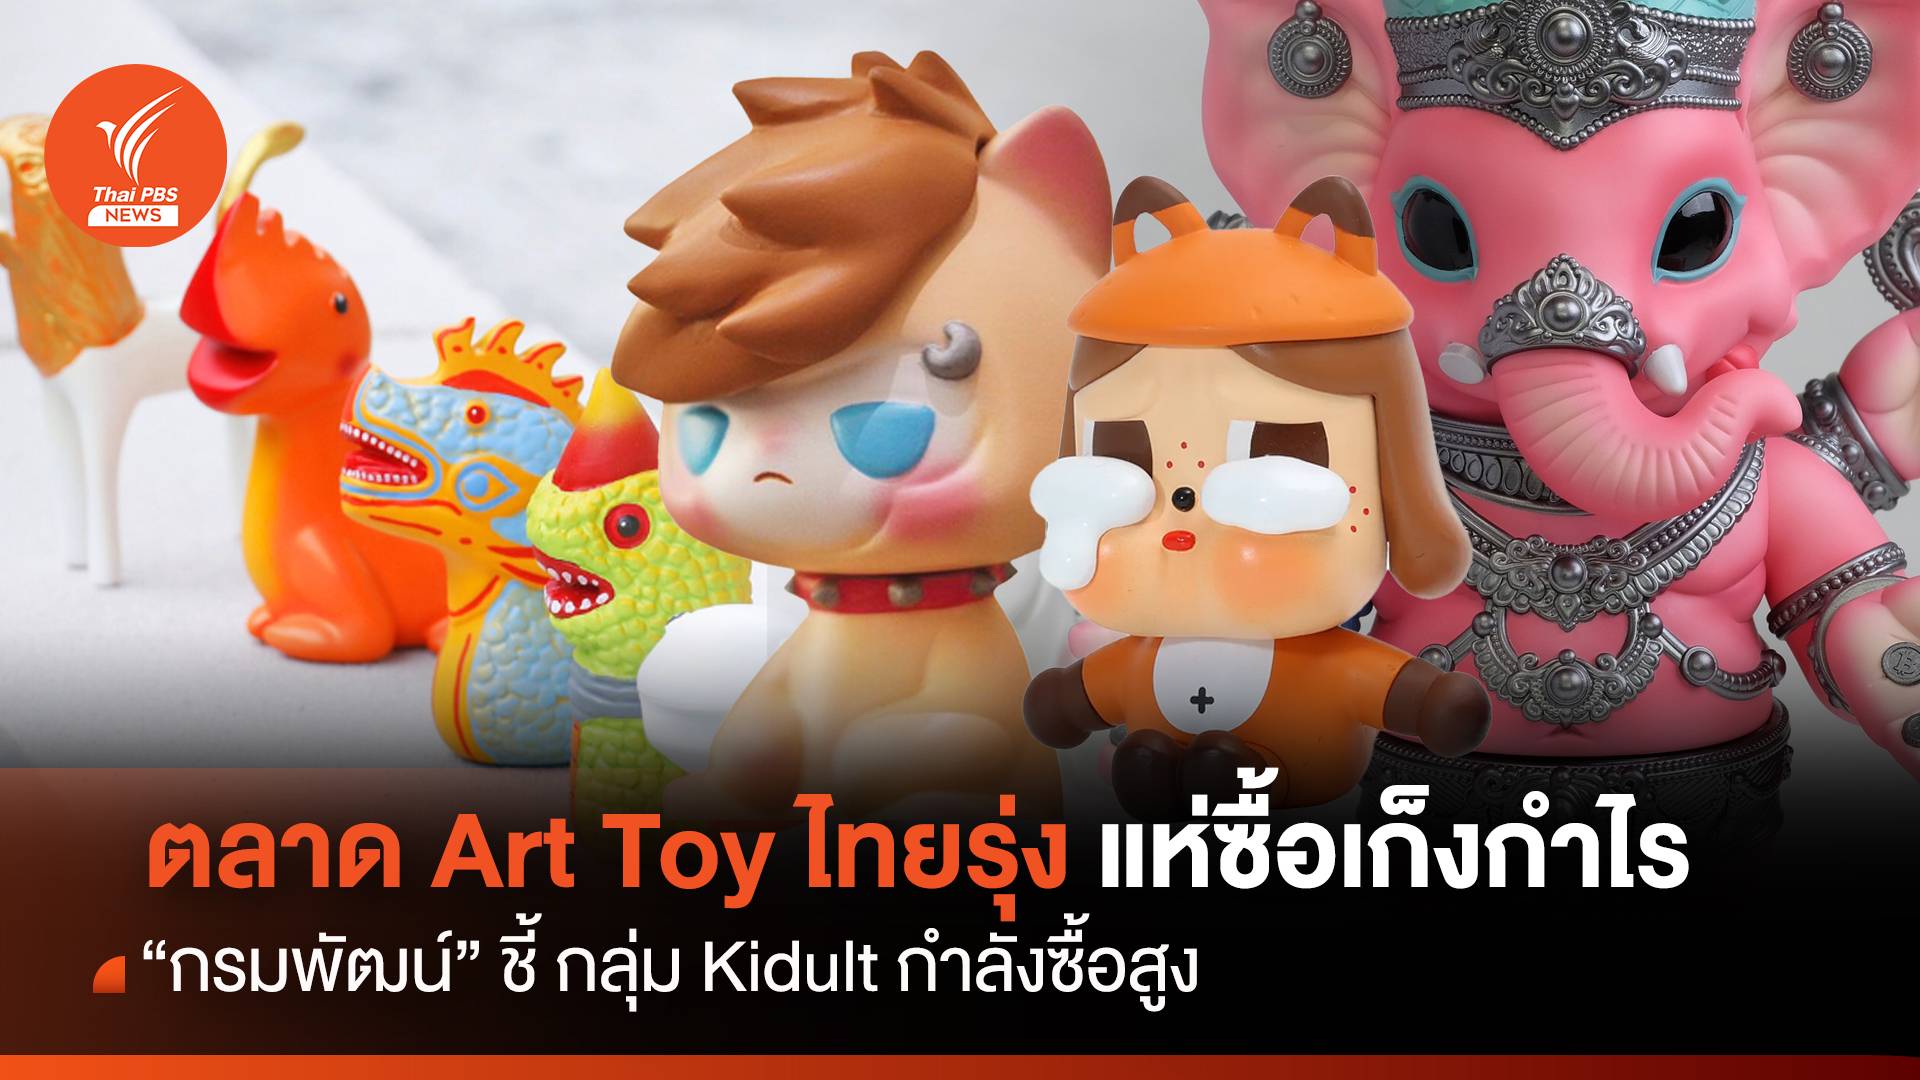 ตลาด Art Toyไทยรุ่ง “กรมพัฒน์” ชี้ กลุ่ม Kidult แห่ซื้อเก็งกำไร